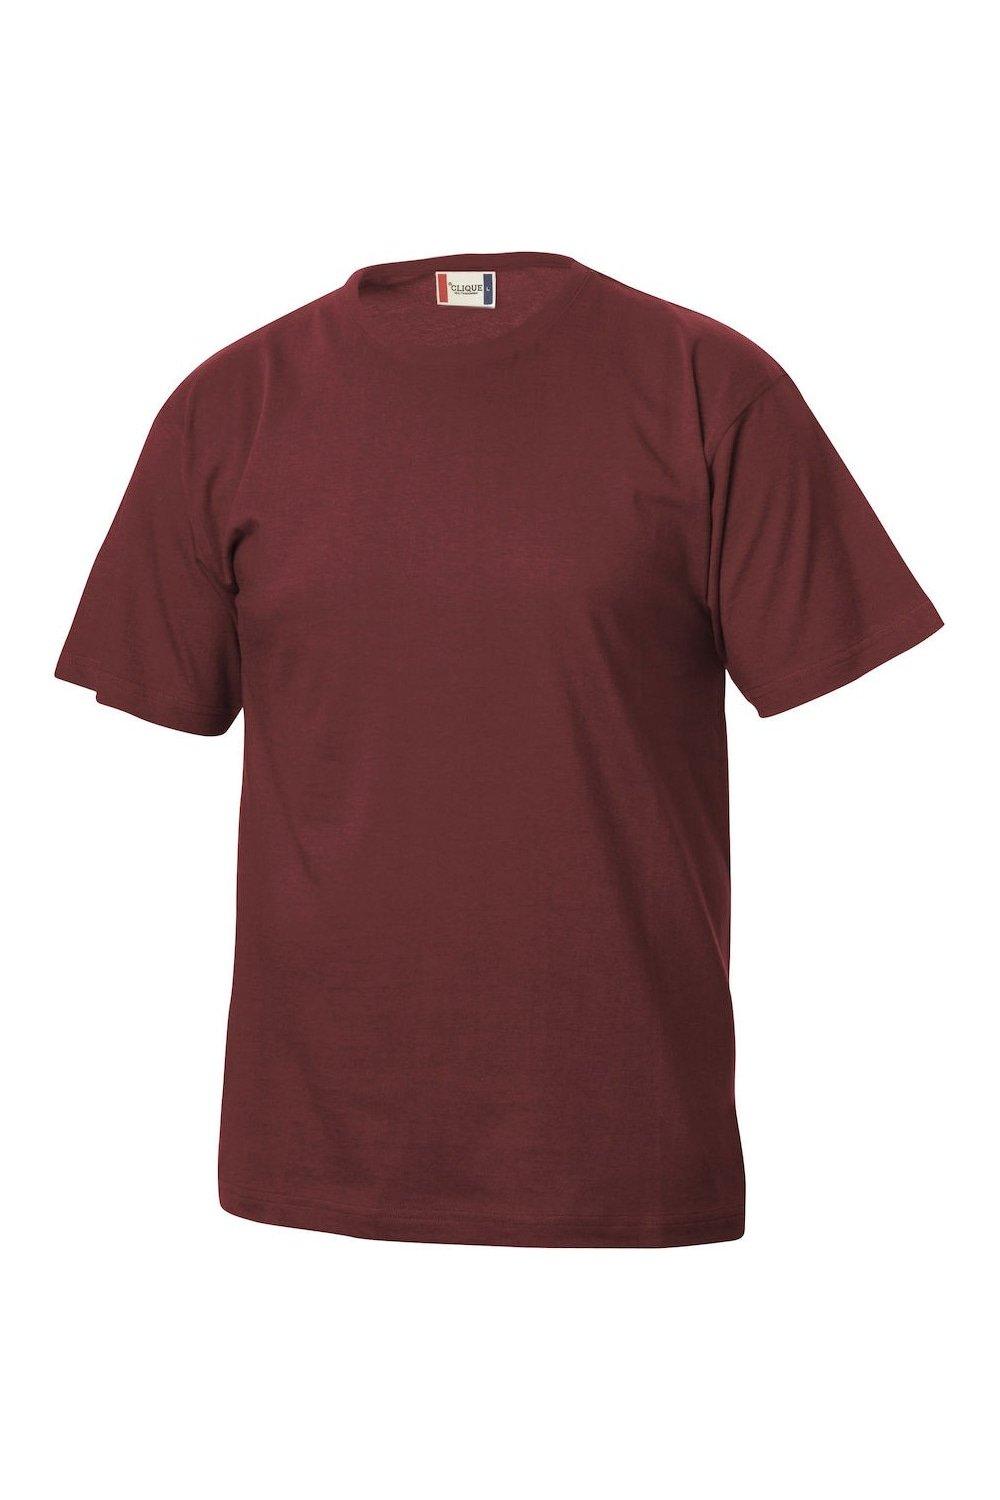 Базовая футболка Clique, красный